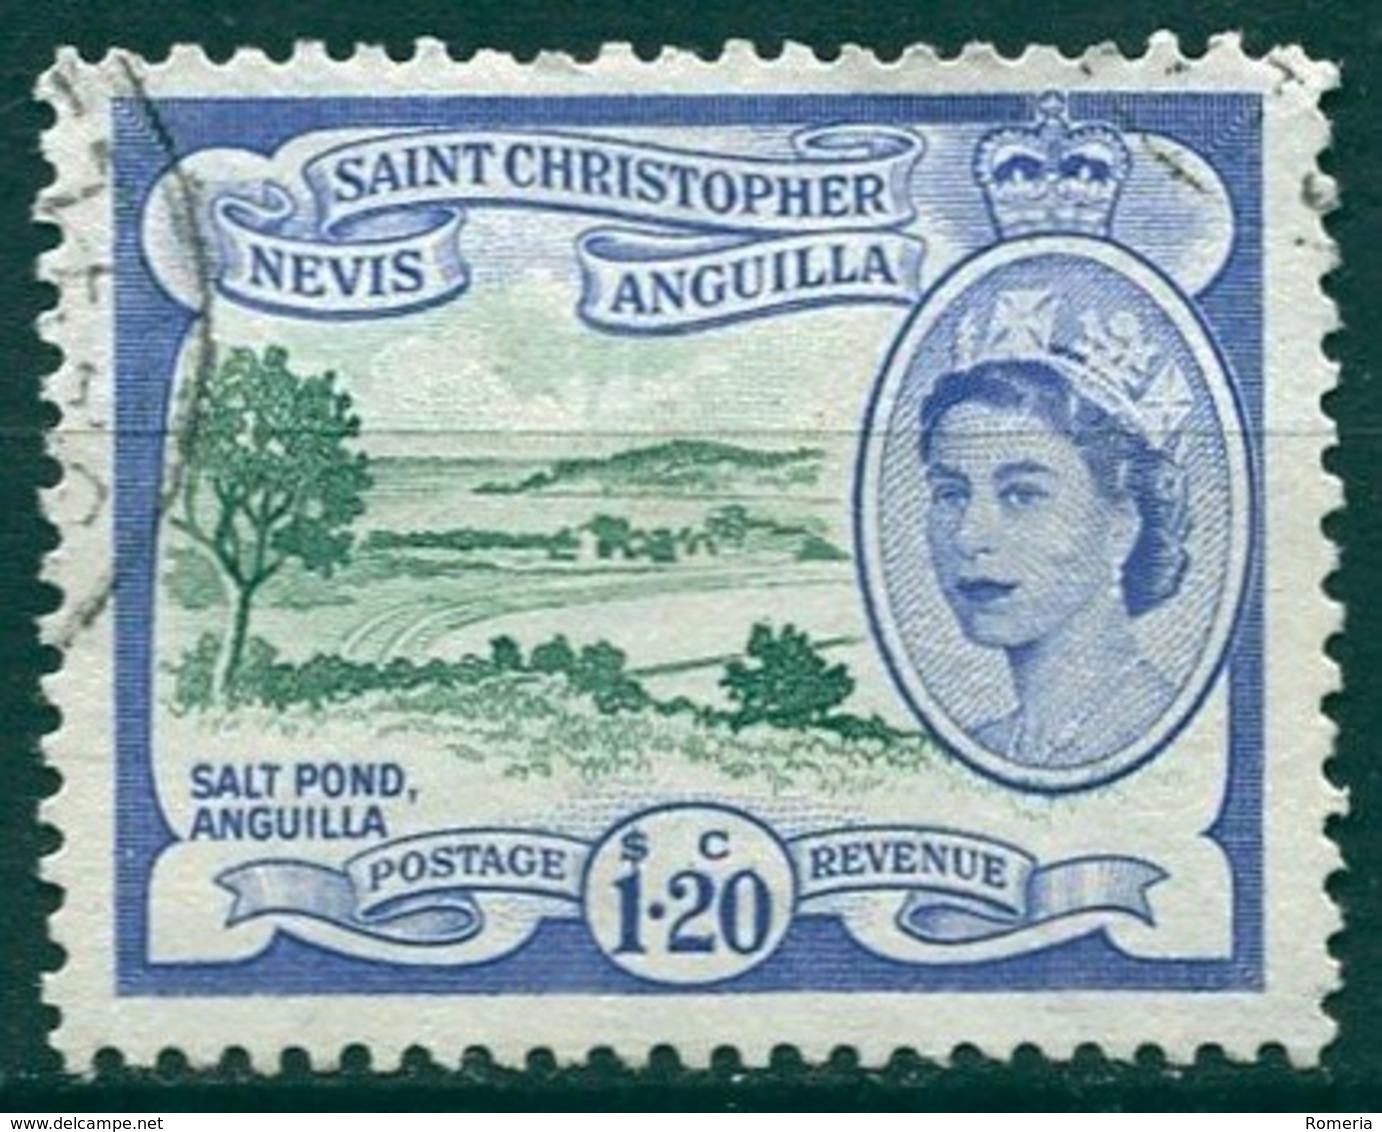 Saint Christopher Nevis Anguilla - 1954/1957 - Yt 146 - Série Courante - Oblitéré - St.Christopher-Nevis-Anguilla (...-1980)